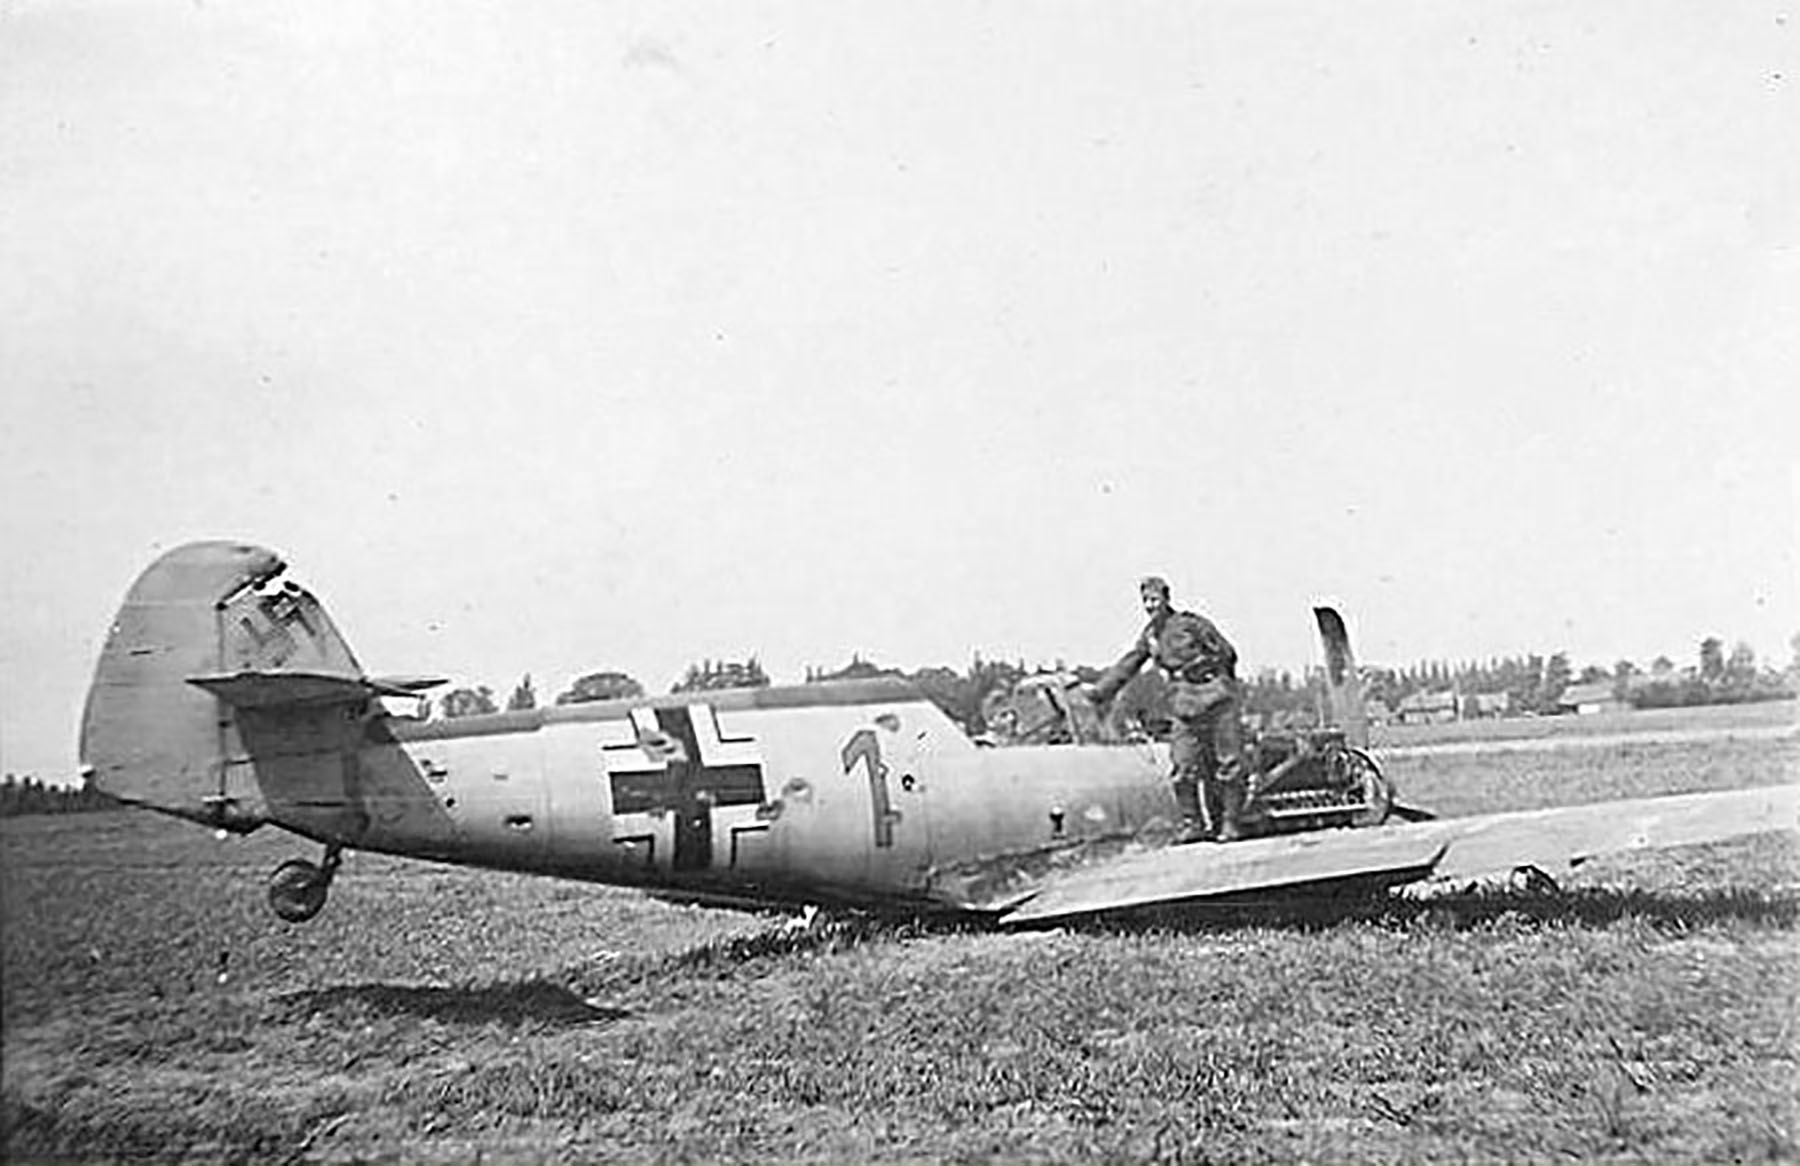 Messerschmitt Bf 109E1 3rd staffel red 1 force landed early 1940 01